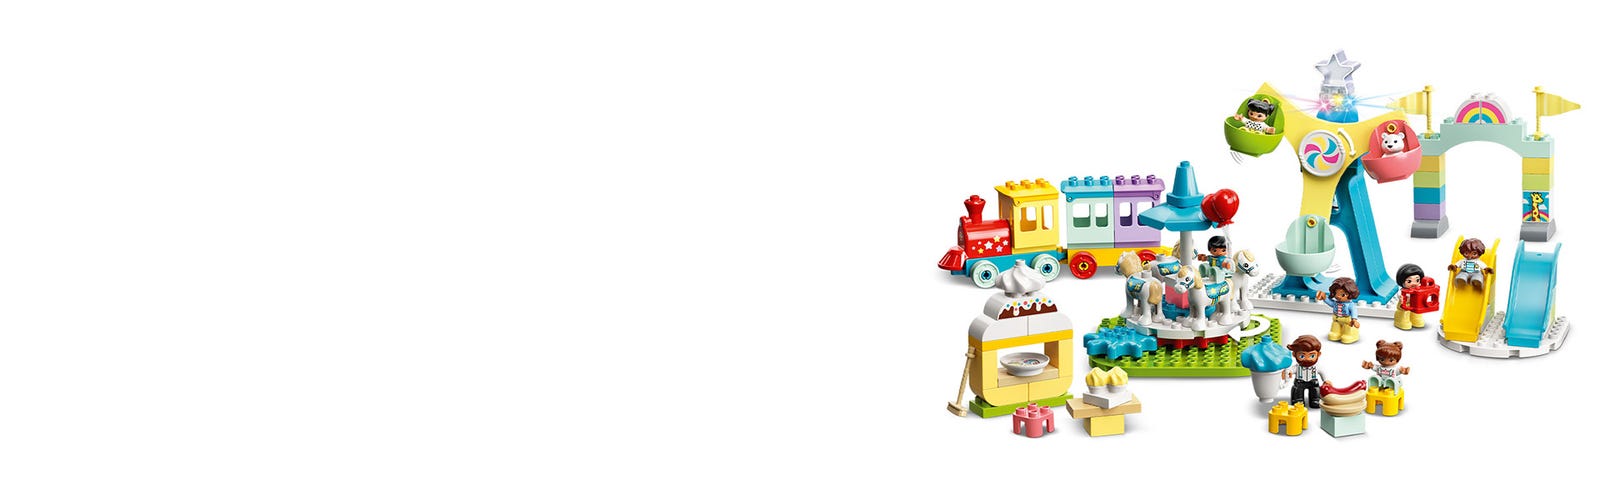 LEGO DUPLO Town 10956 Parco dei Divertimenti, Giocattoli per Bambini di 2  Anni, Parco Giochi con 7 Minifigure e Accessori